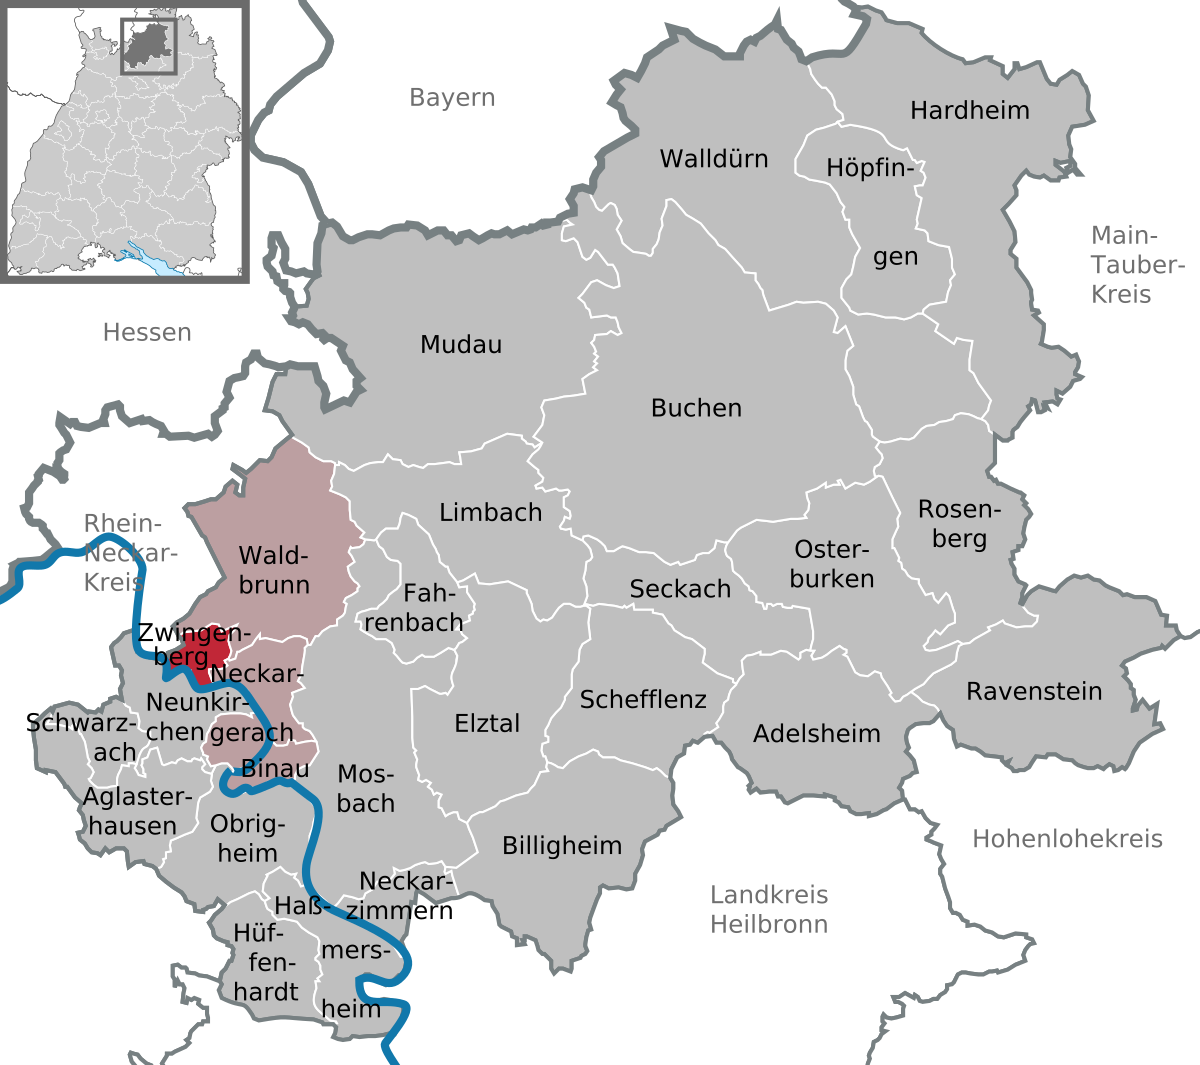 Bildergebnis für Zwingenberg neckar baden-württemberg plz karte